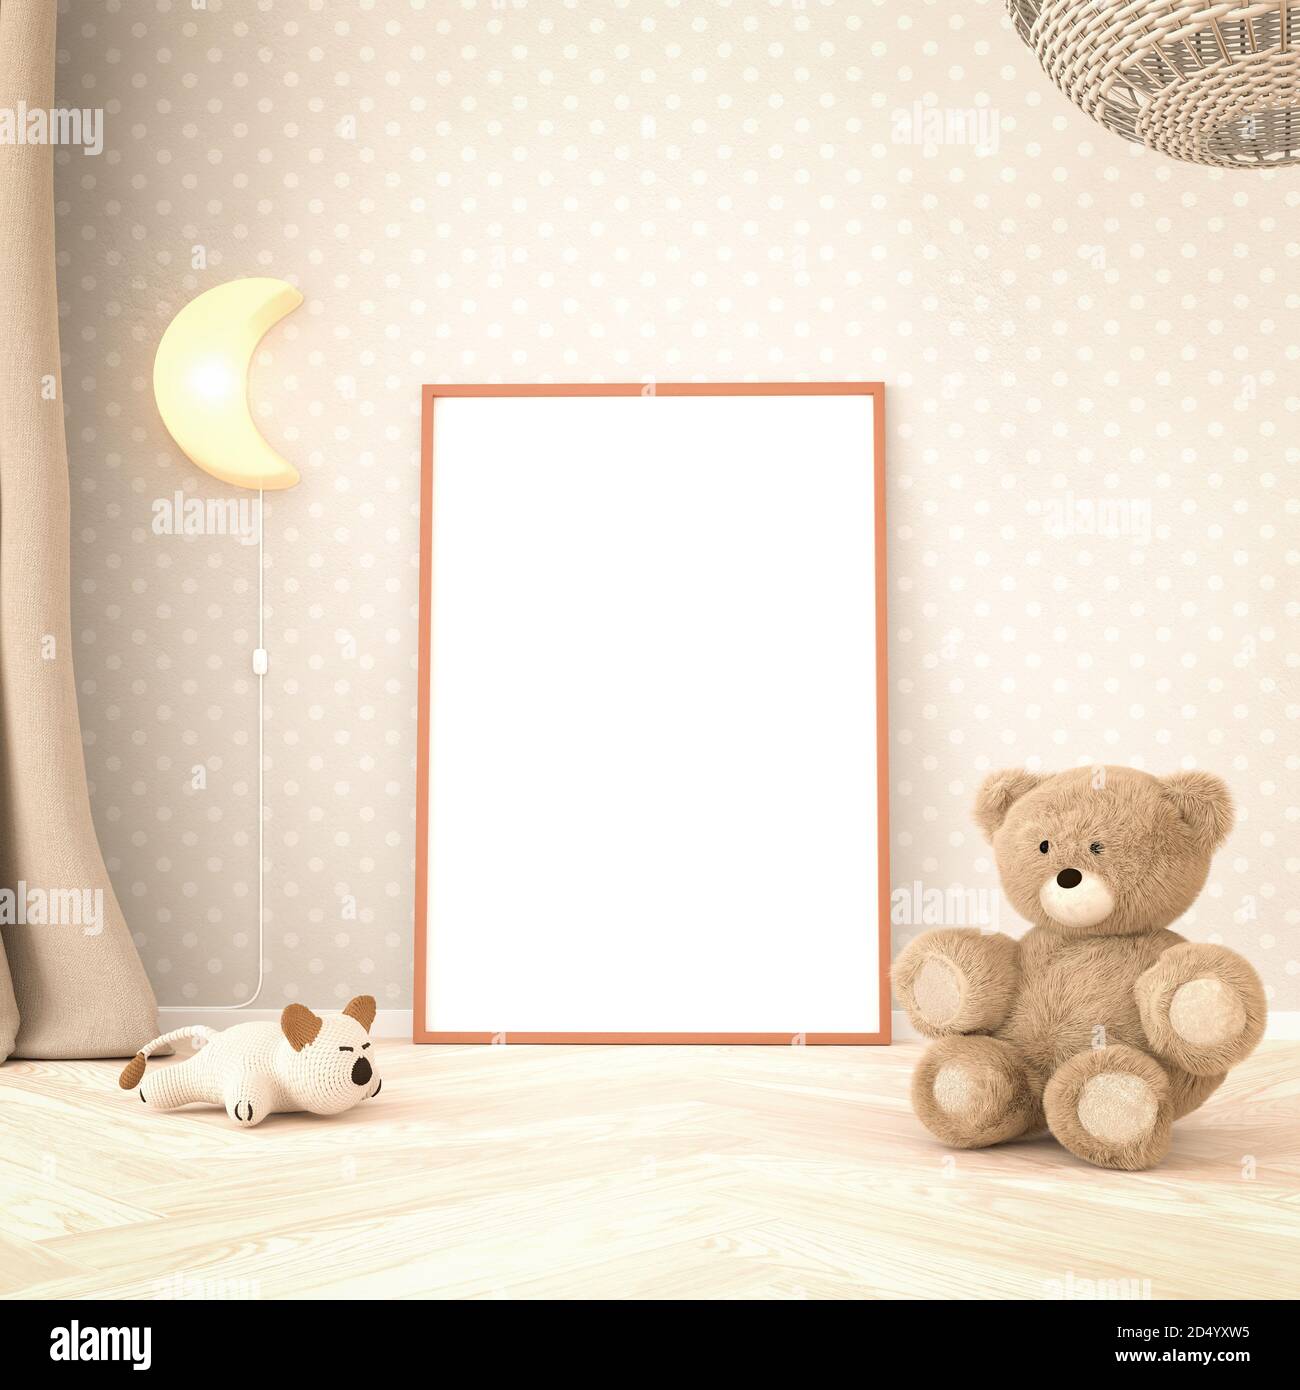 Kinderzimmer Innenmockup mit leerem Bilderrahmen (70x100cm). Teddybär, Katzenspielzeug, Mondlampe, Vorhang und Rattan Deckenlampe. Gepunktete Creme c Stockfoto